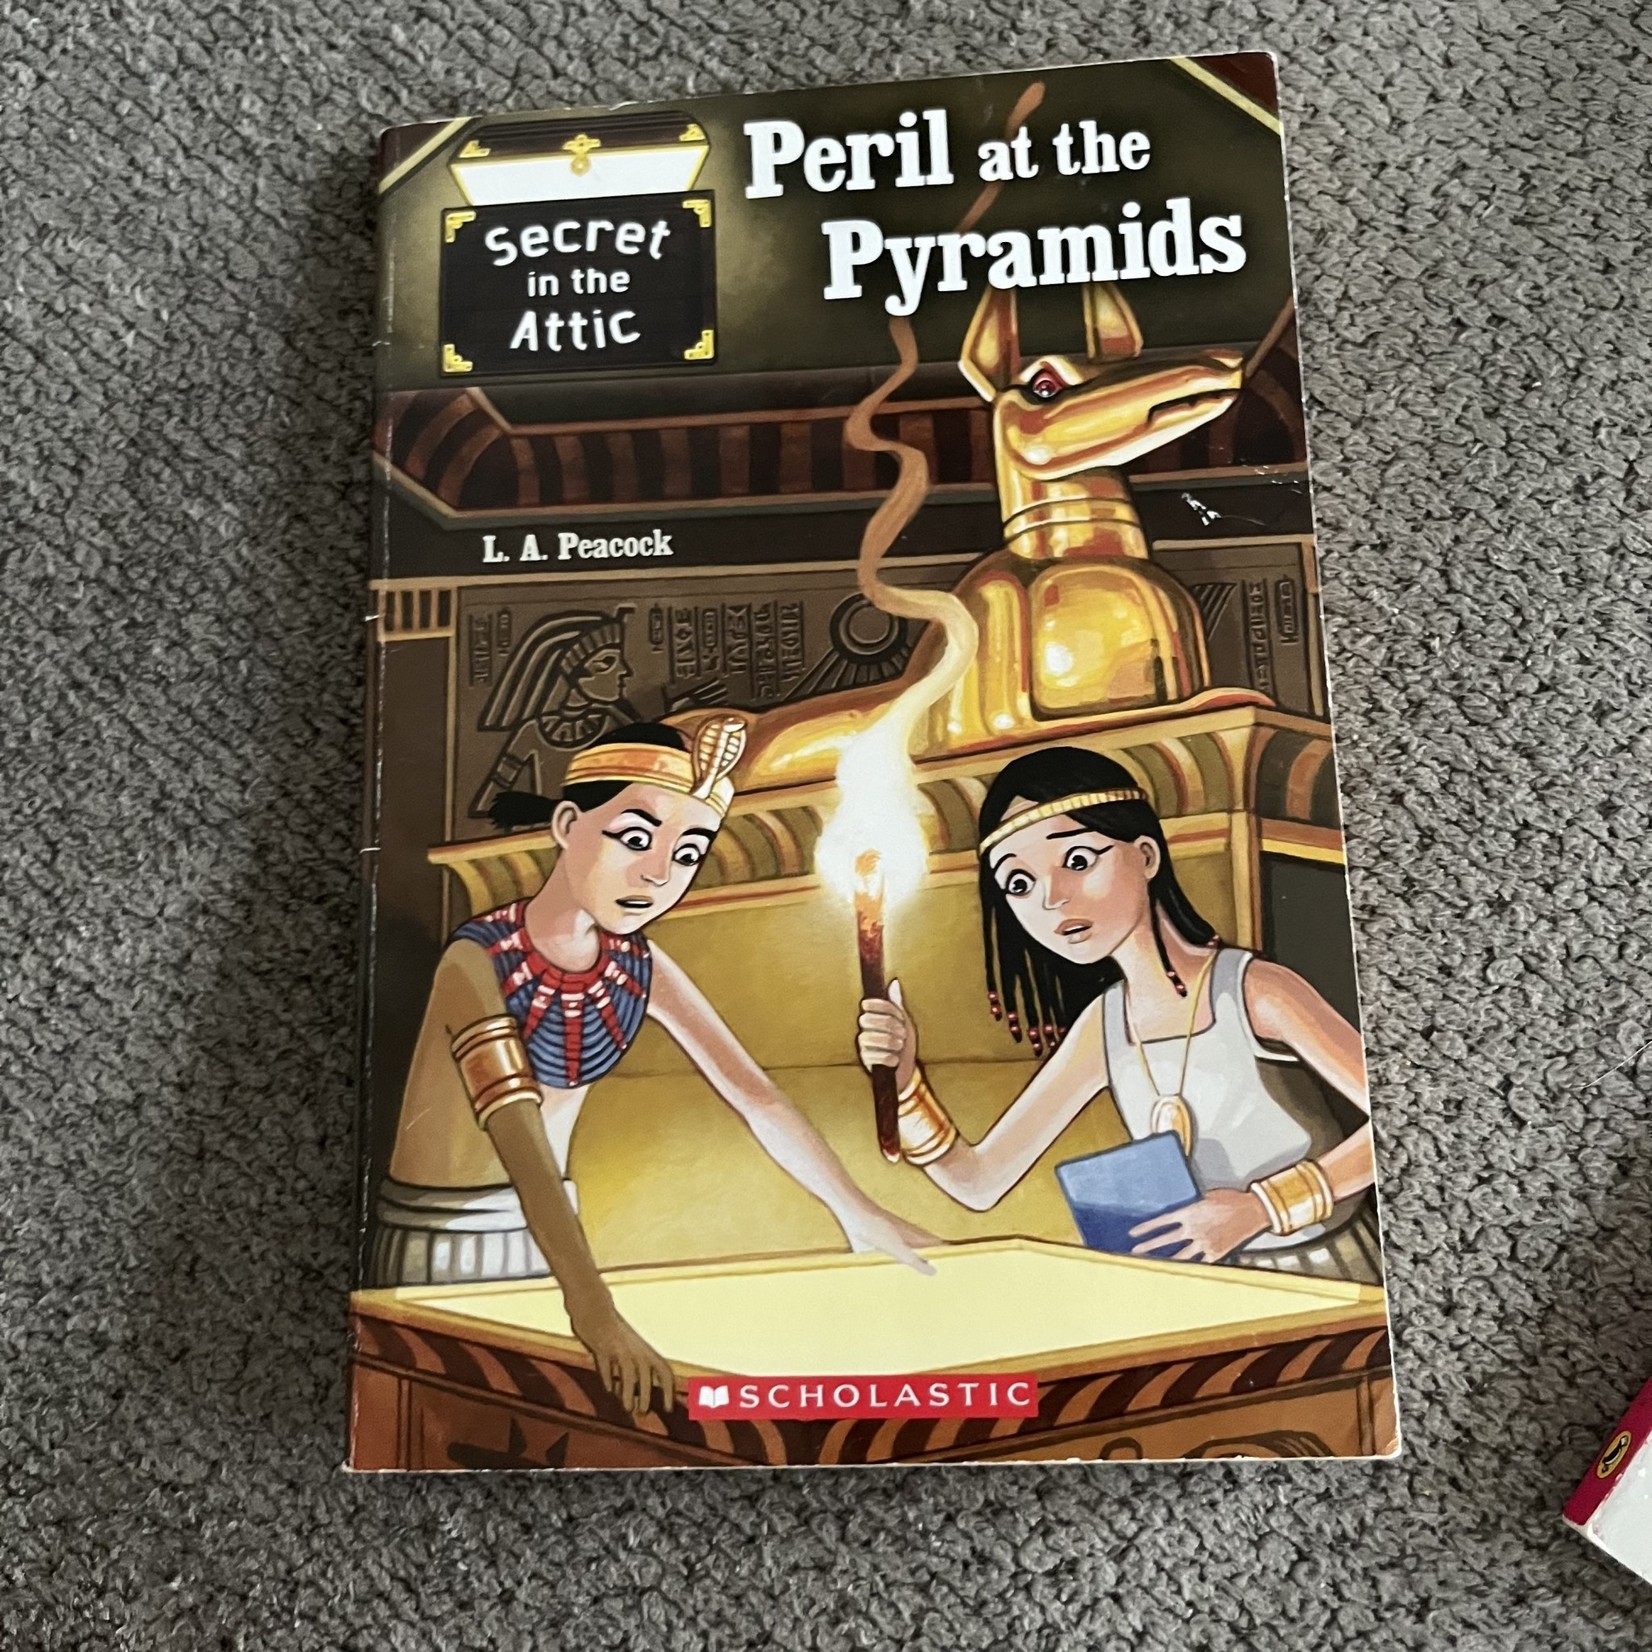 Secret in the Attic - Peril at the Pyramids